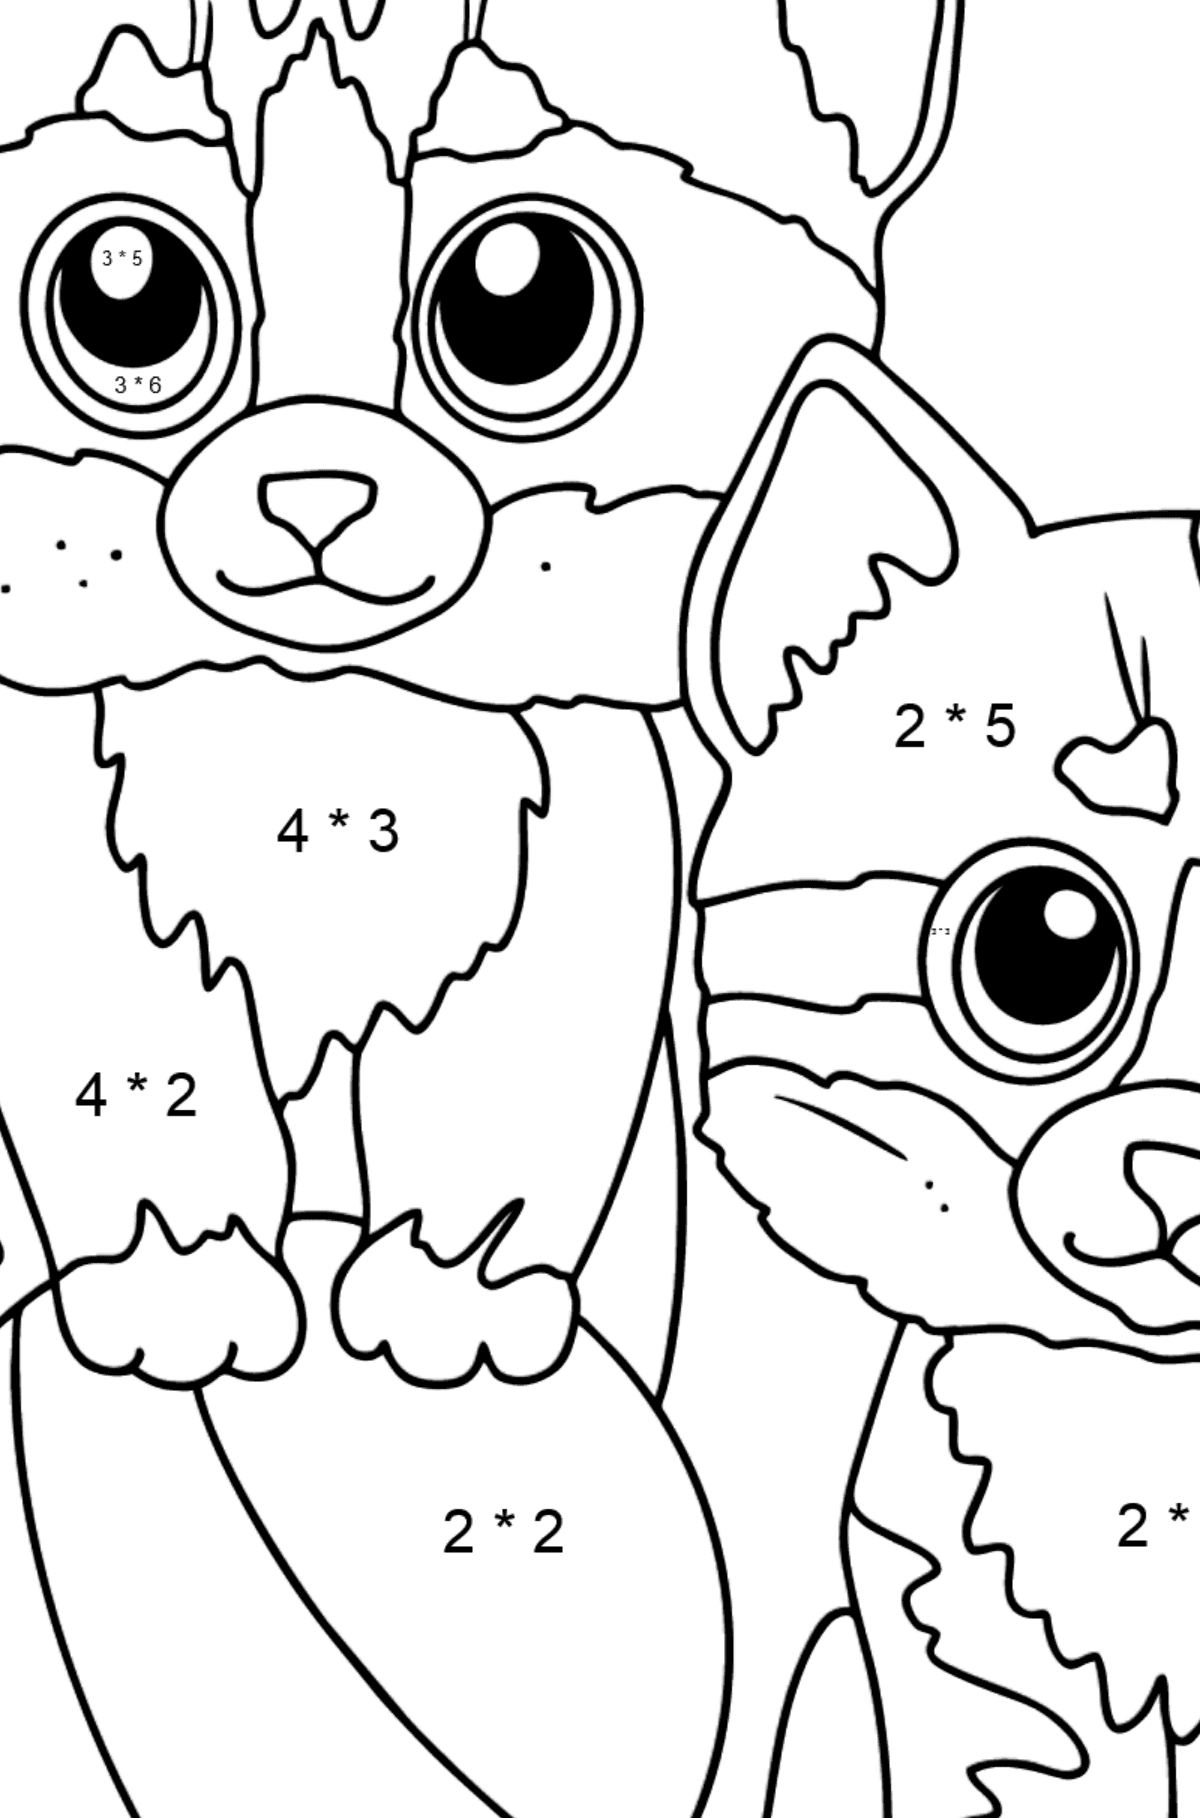 Disegno da colorare di due gattini per bambini - Colorazione matematica - Moltiplicazione per bambini